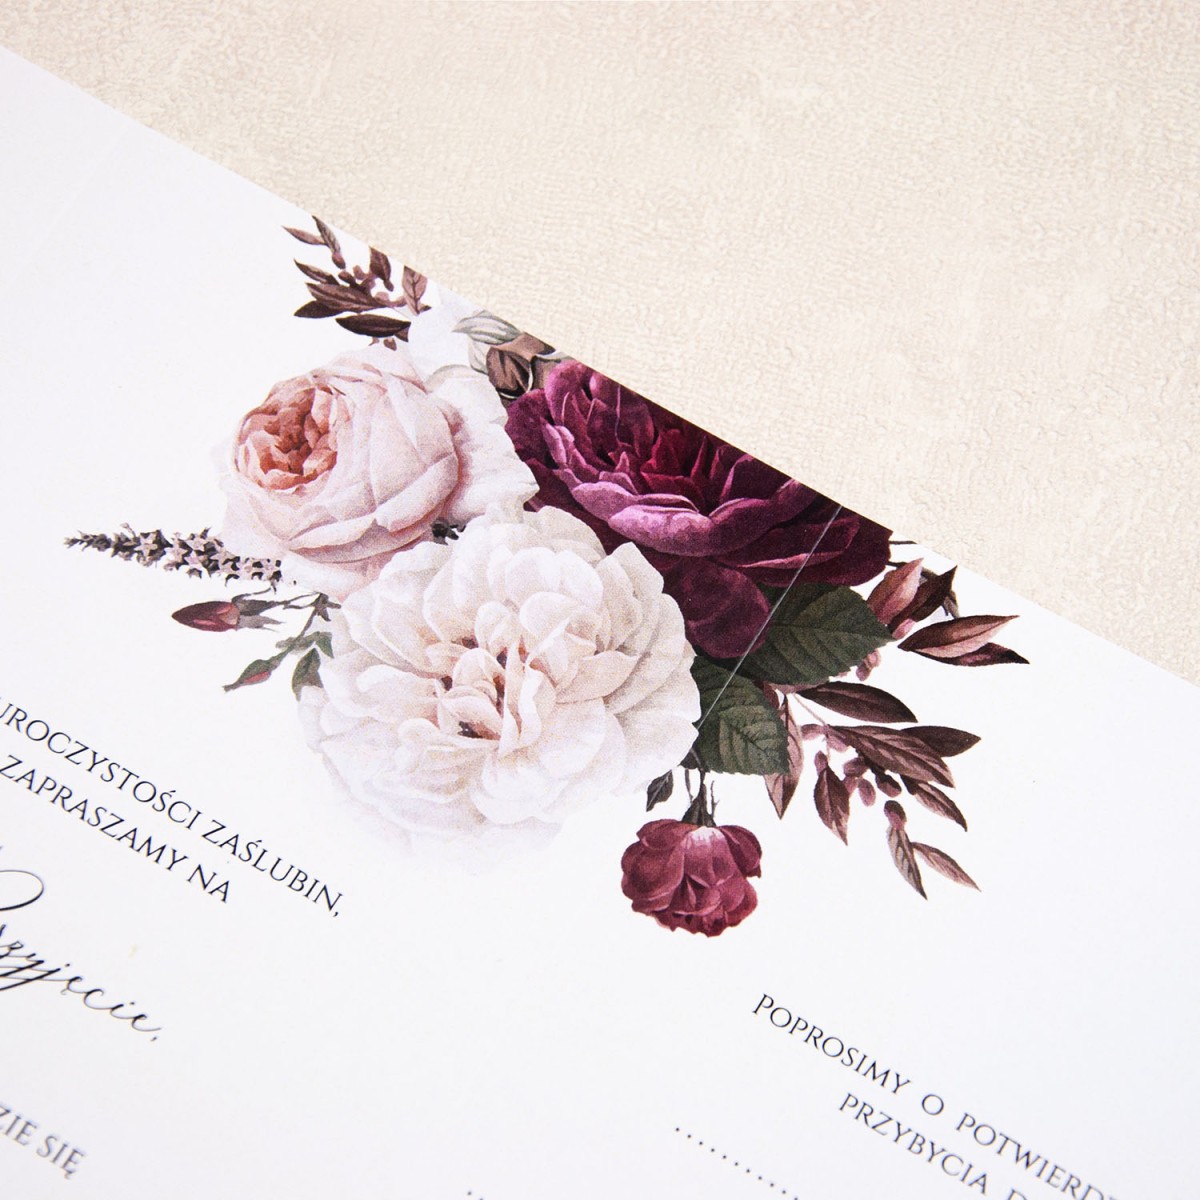 Zaproszenia Ślubne rozkładane na 4 części z bordowymi i białymi kwiatami do własnoręcznego uzupełnienia - Maroon Flowers - LAST MINUTE